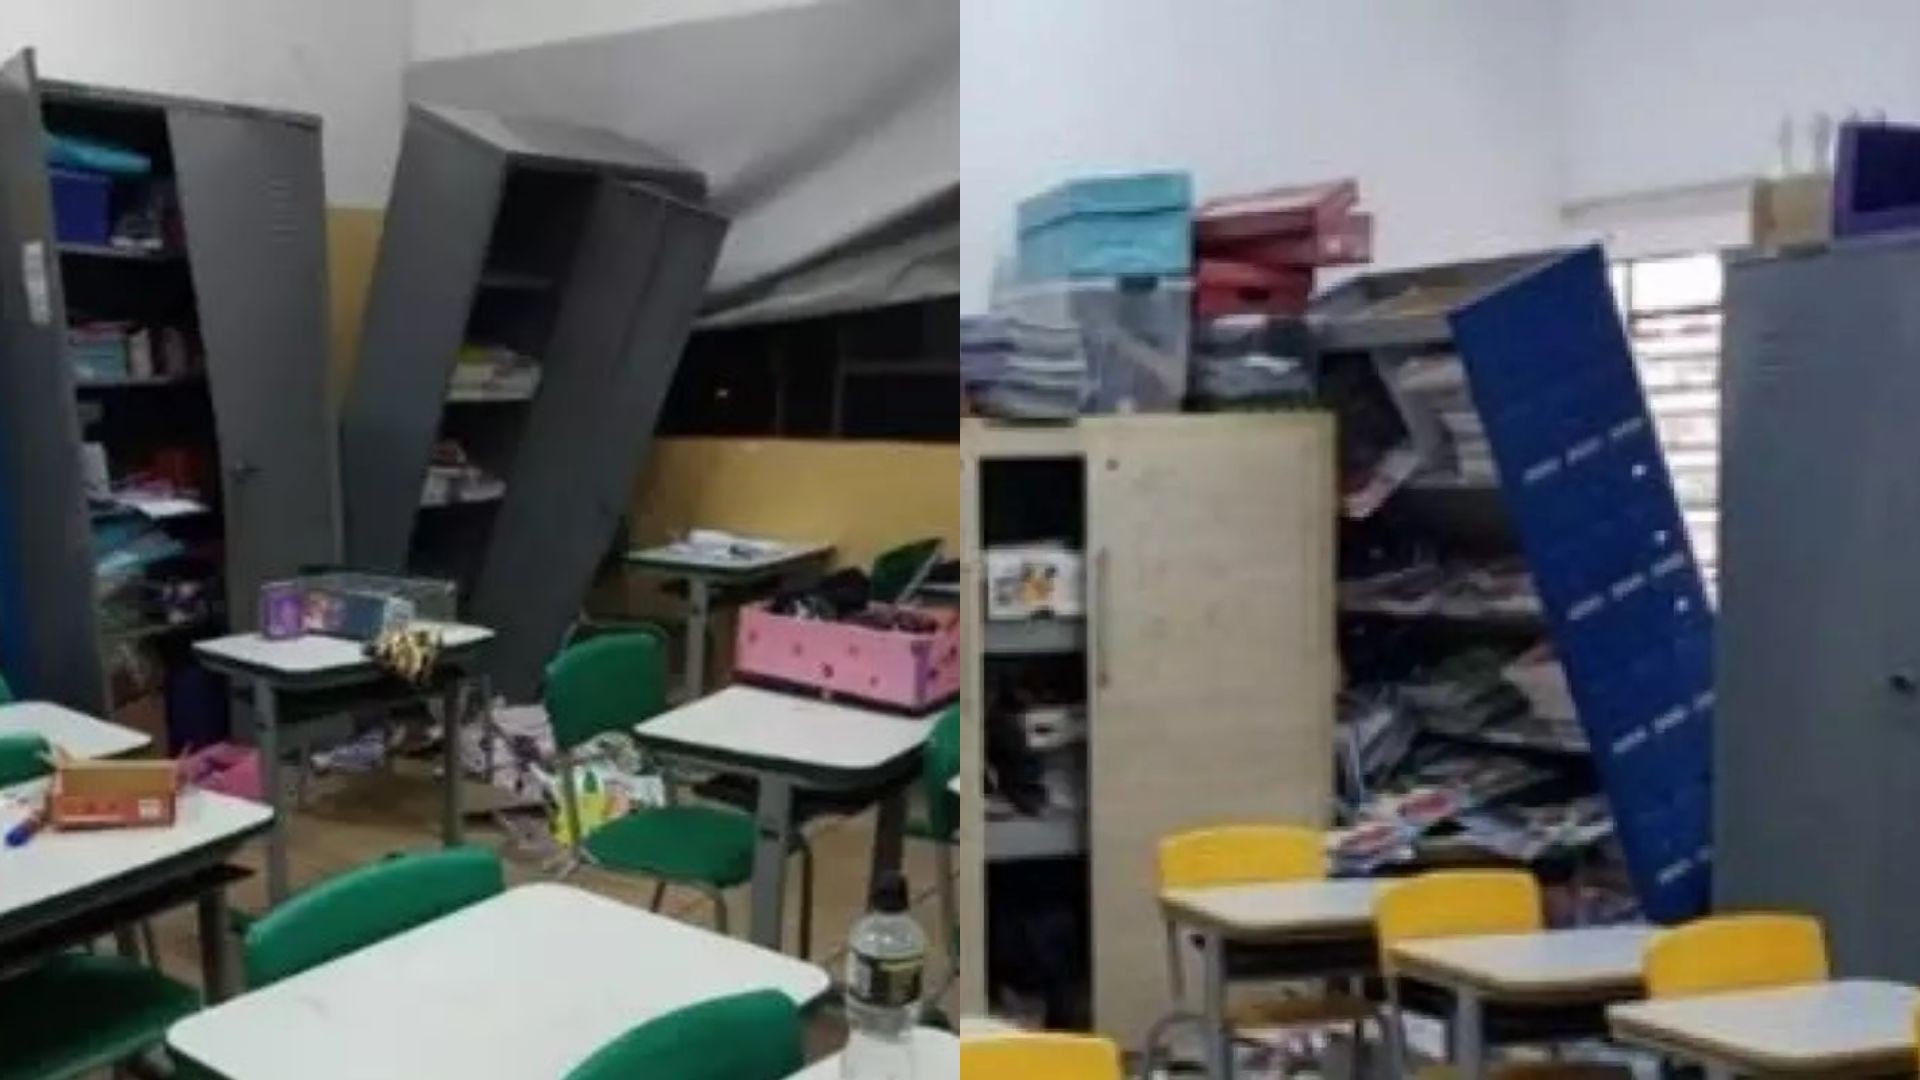 Vândalos invadem escola e destroem salas de aula em Bauru